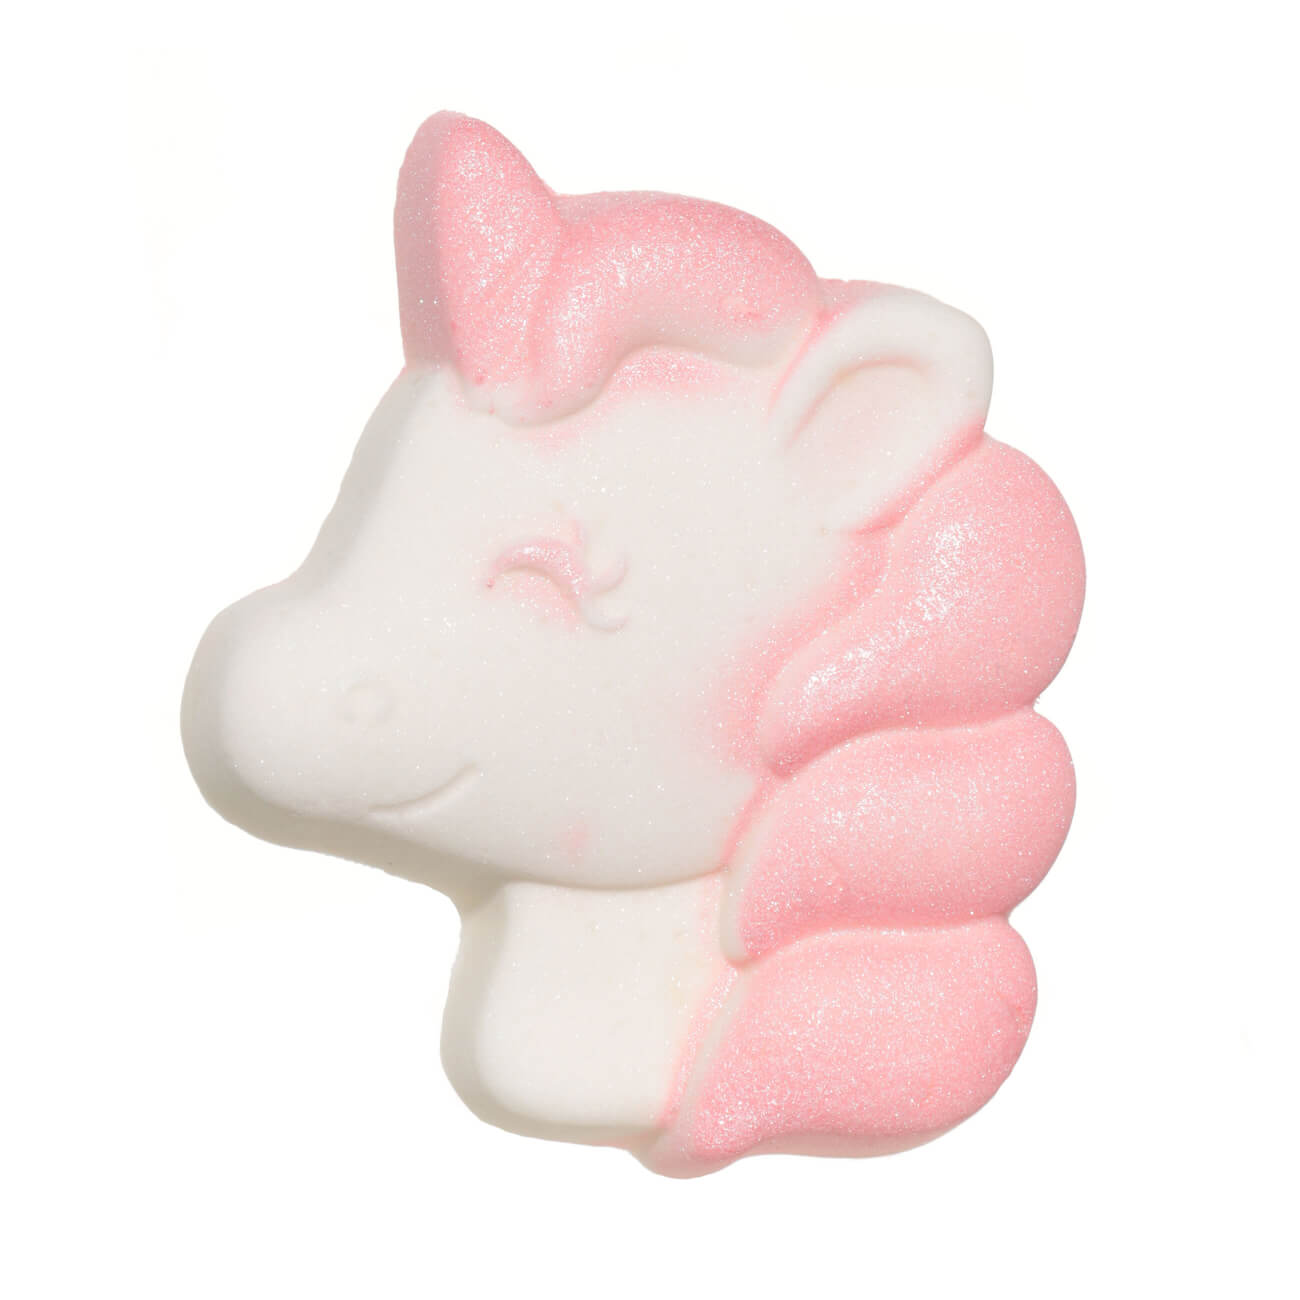 бомбочка для ванны 100 гр розово белая клубника единорог unicorn Бомбочка для ванны, 100 гр, розово-белая, Клубника, Единорог, Unicorn